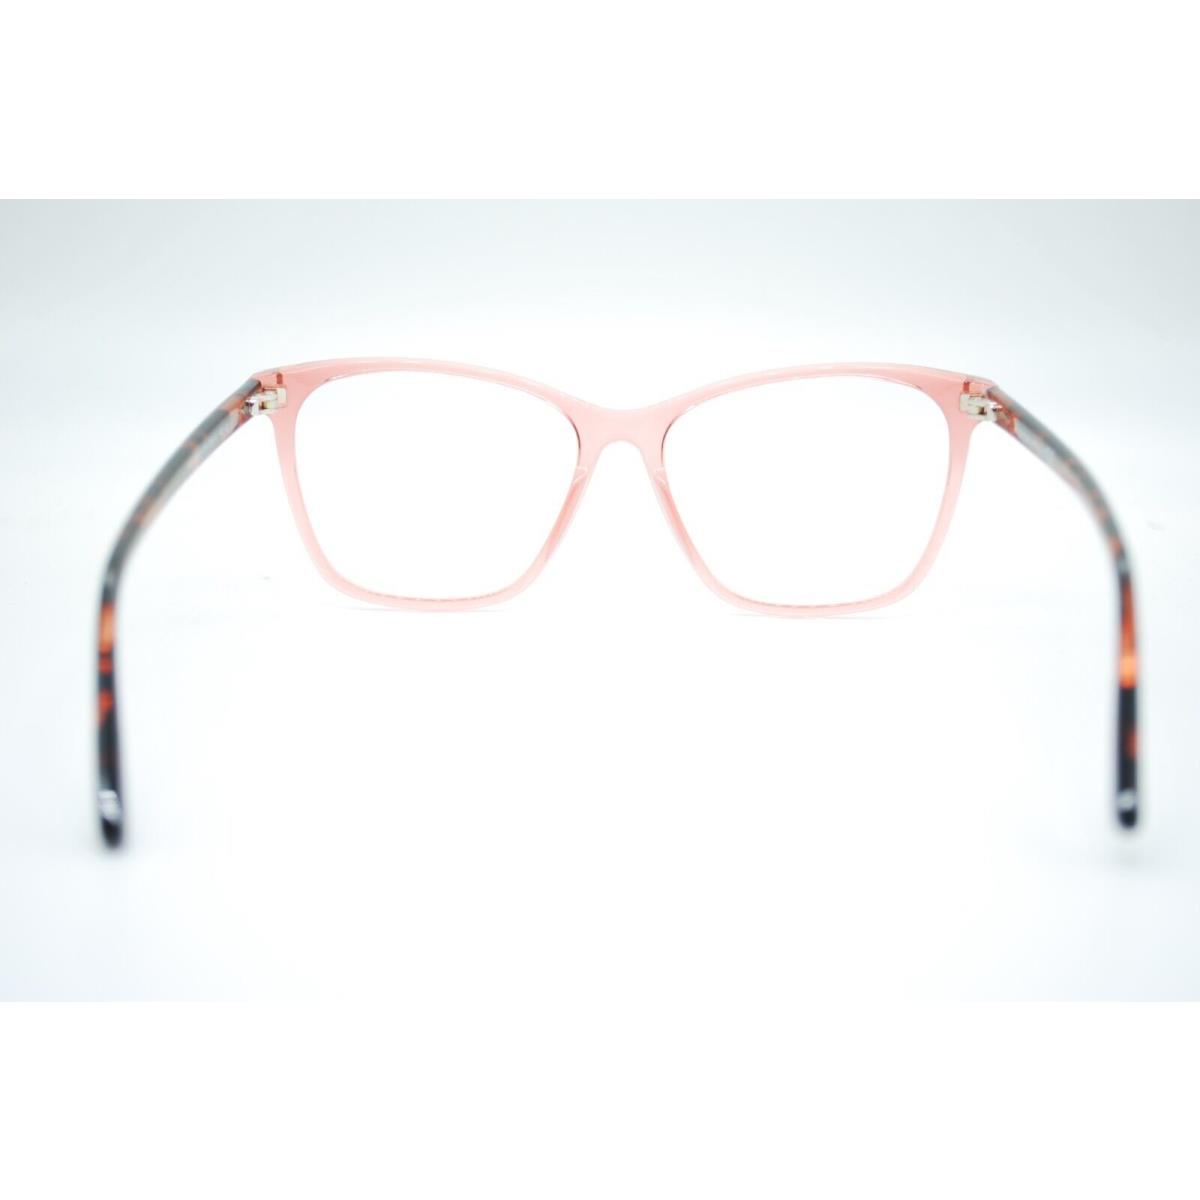 Tom Ford eyeglasses  - CORAL PINK Frame 3